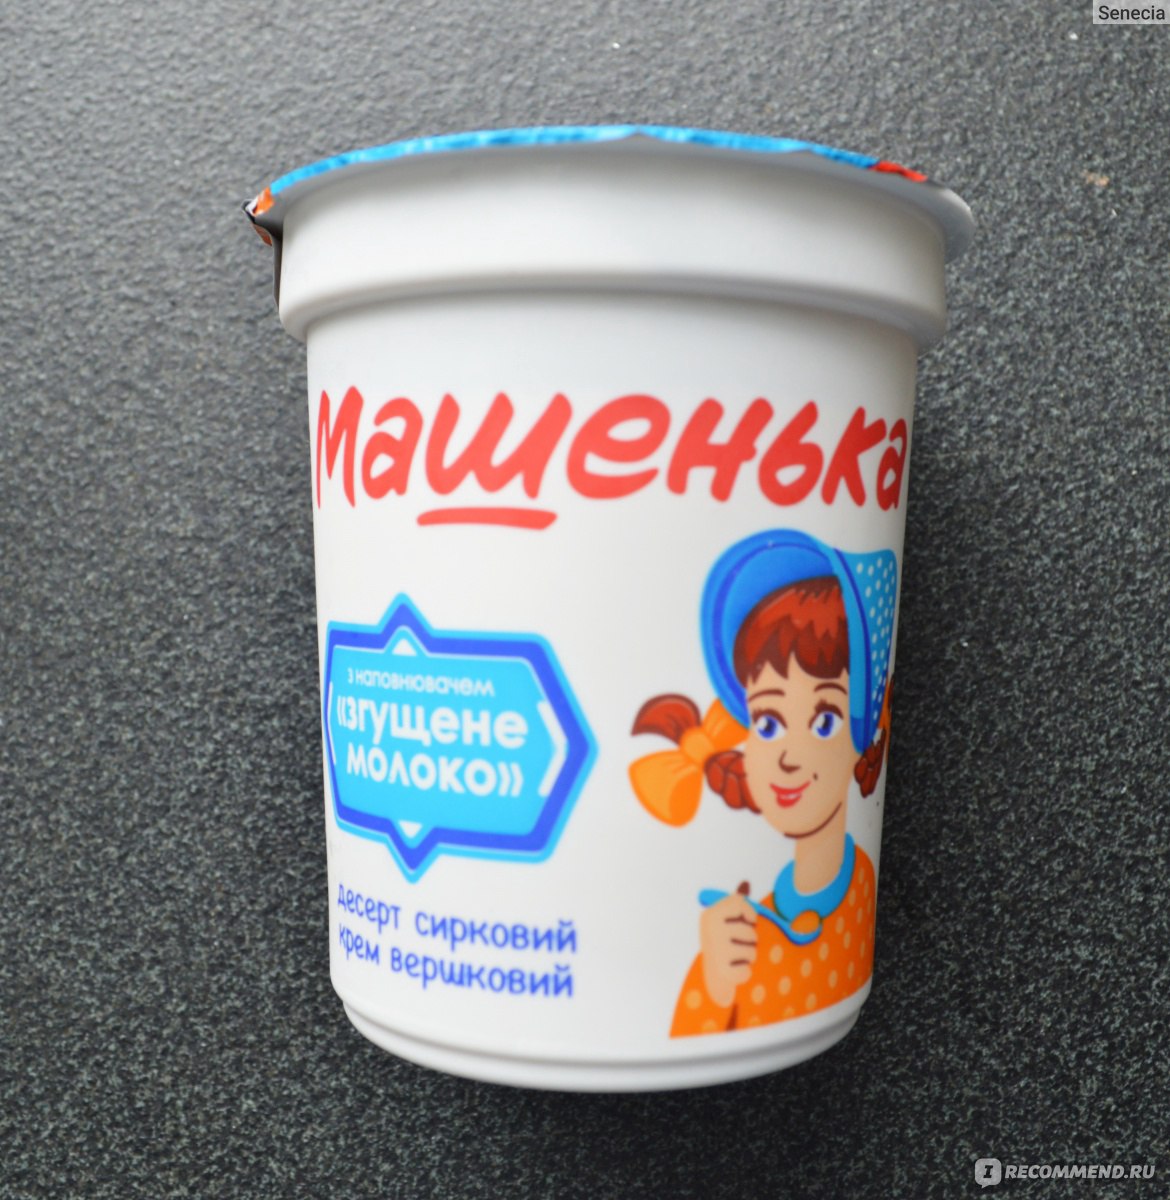 Рецепты для детей - рецепты с фото на webmaster-korolev.ru ( рецептов детских блюд) | страница 